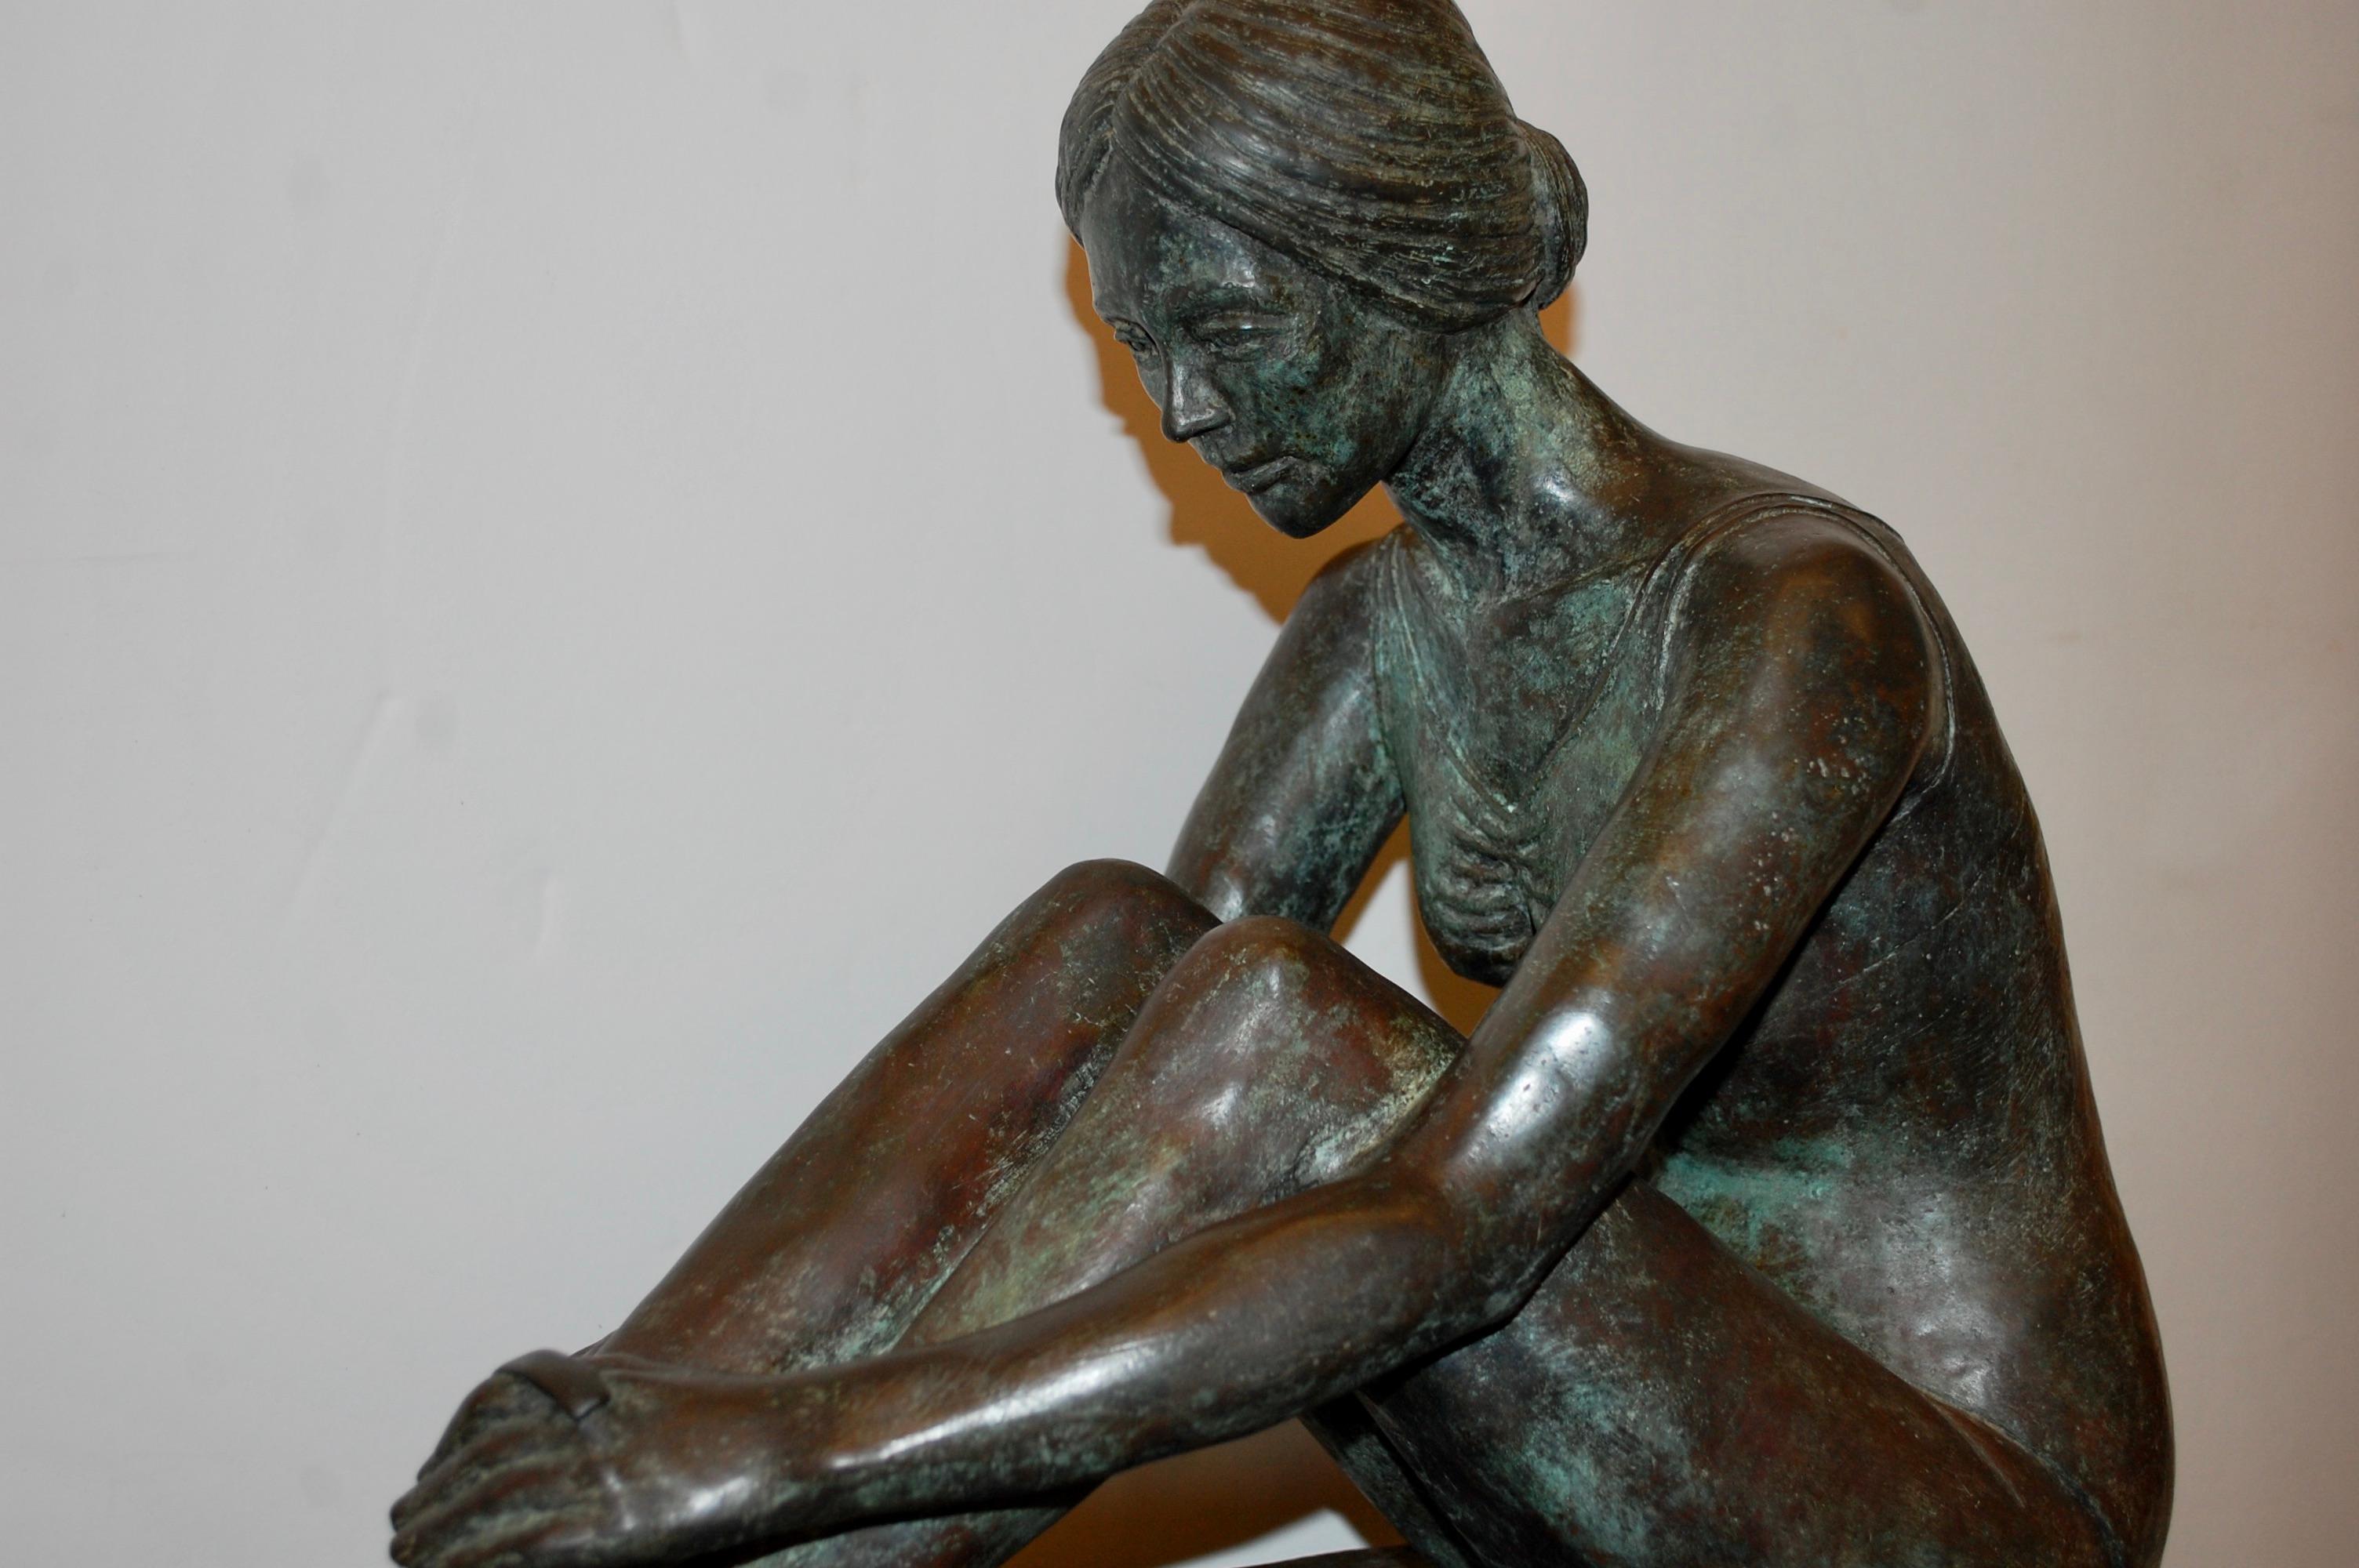  Ballerina Tying Schuh Bronze-Skulptur – Sculpture von N. Abrams